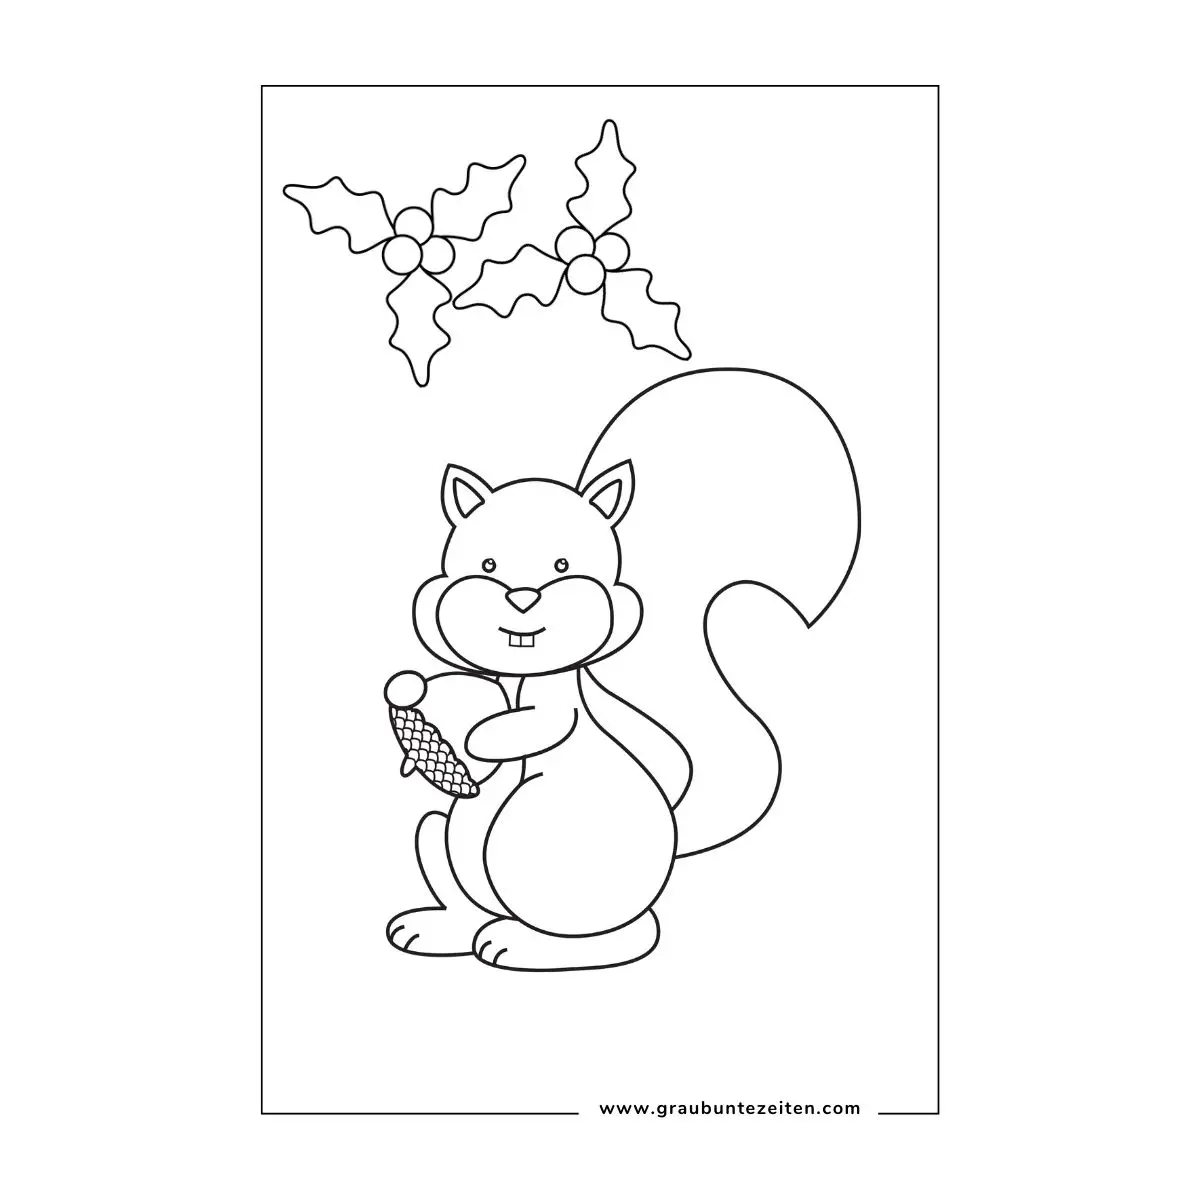 Ausmalbilder Weihnachten Tiere. Ein Eichhörnchen mit einer Eichel sitzt unter einem Mistelzweig.